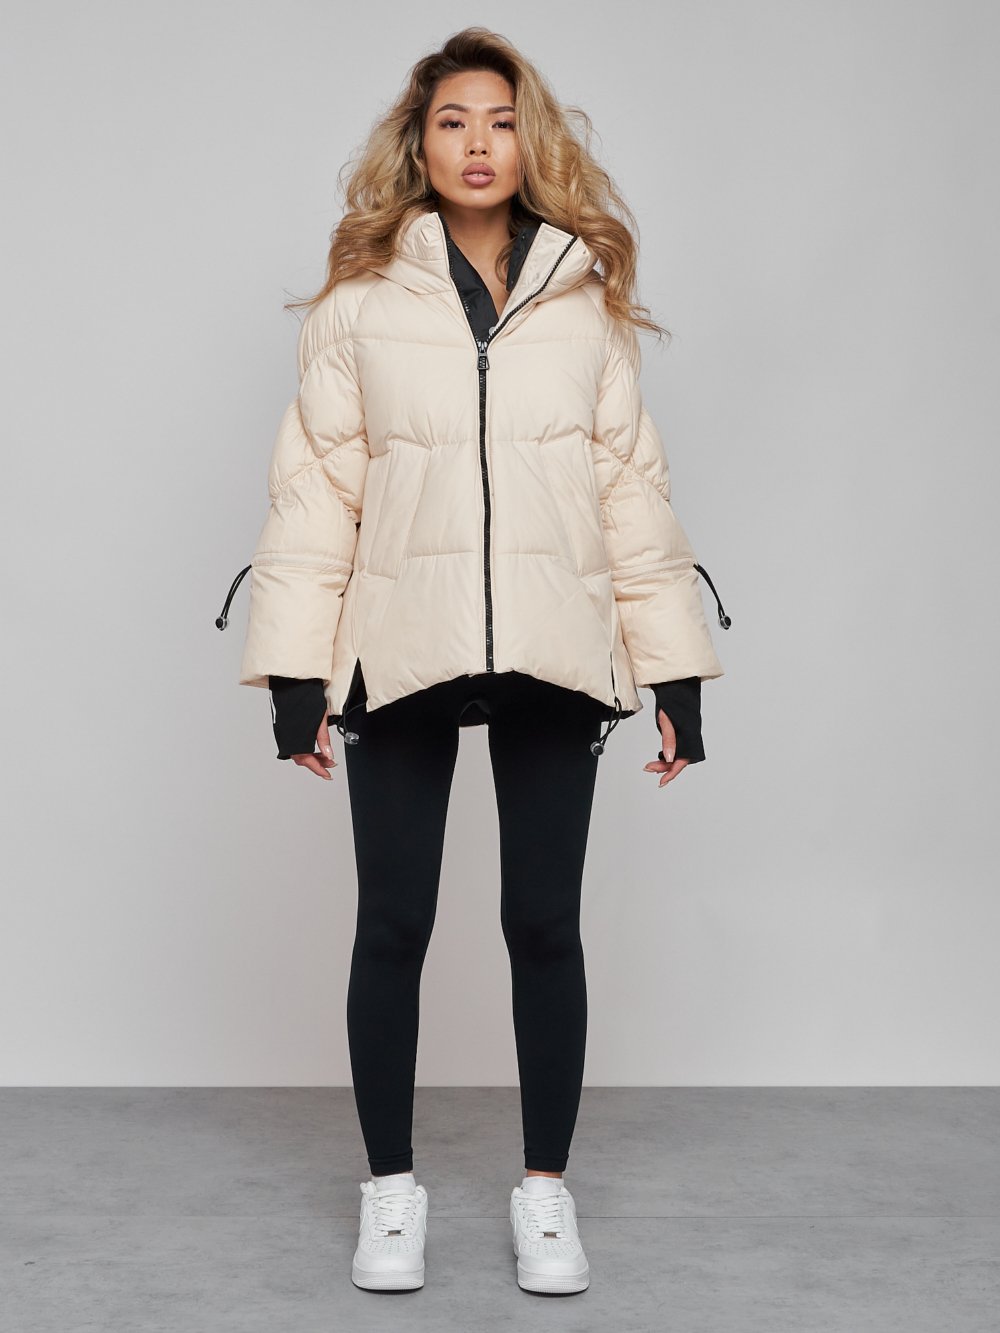 Купить оптом Зимняя женская куртка модная с капюшоном бежевого цвета 52306B в Екатеринбурге